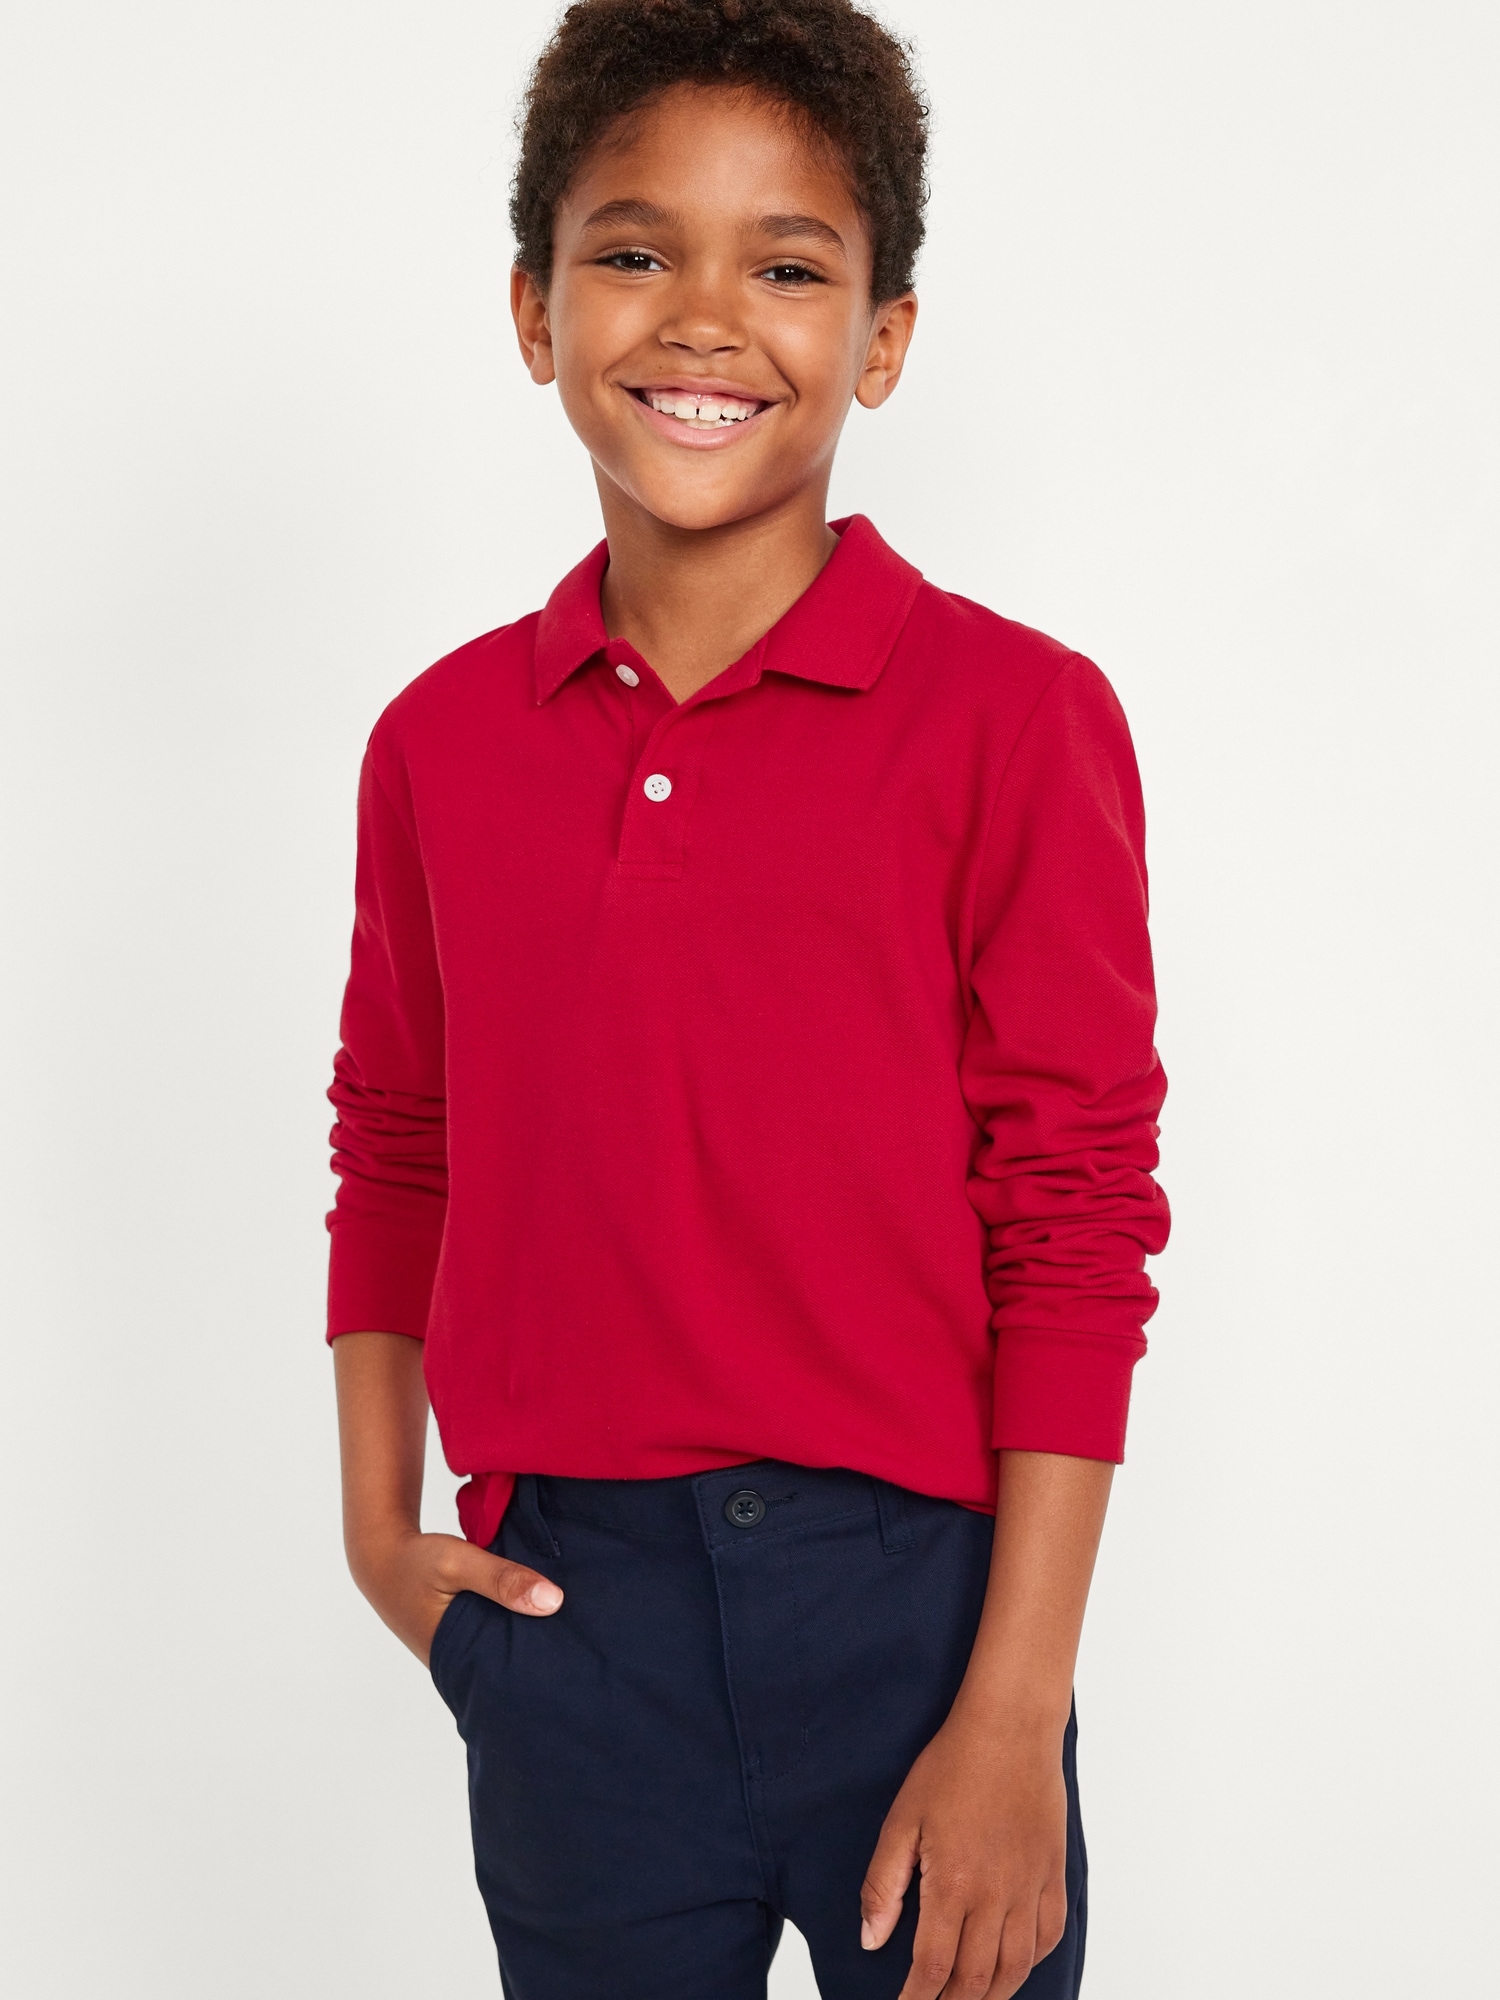 School Uniform Long-Sleeve Polo Shirt for Boys